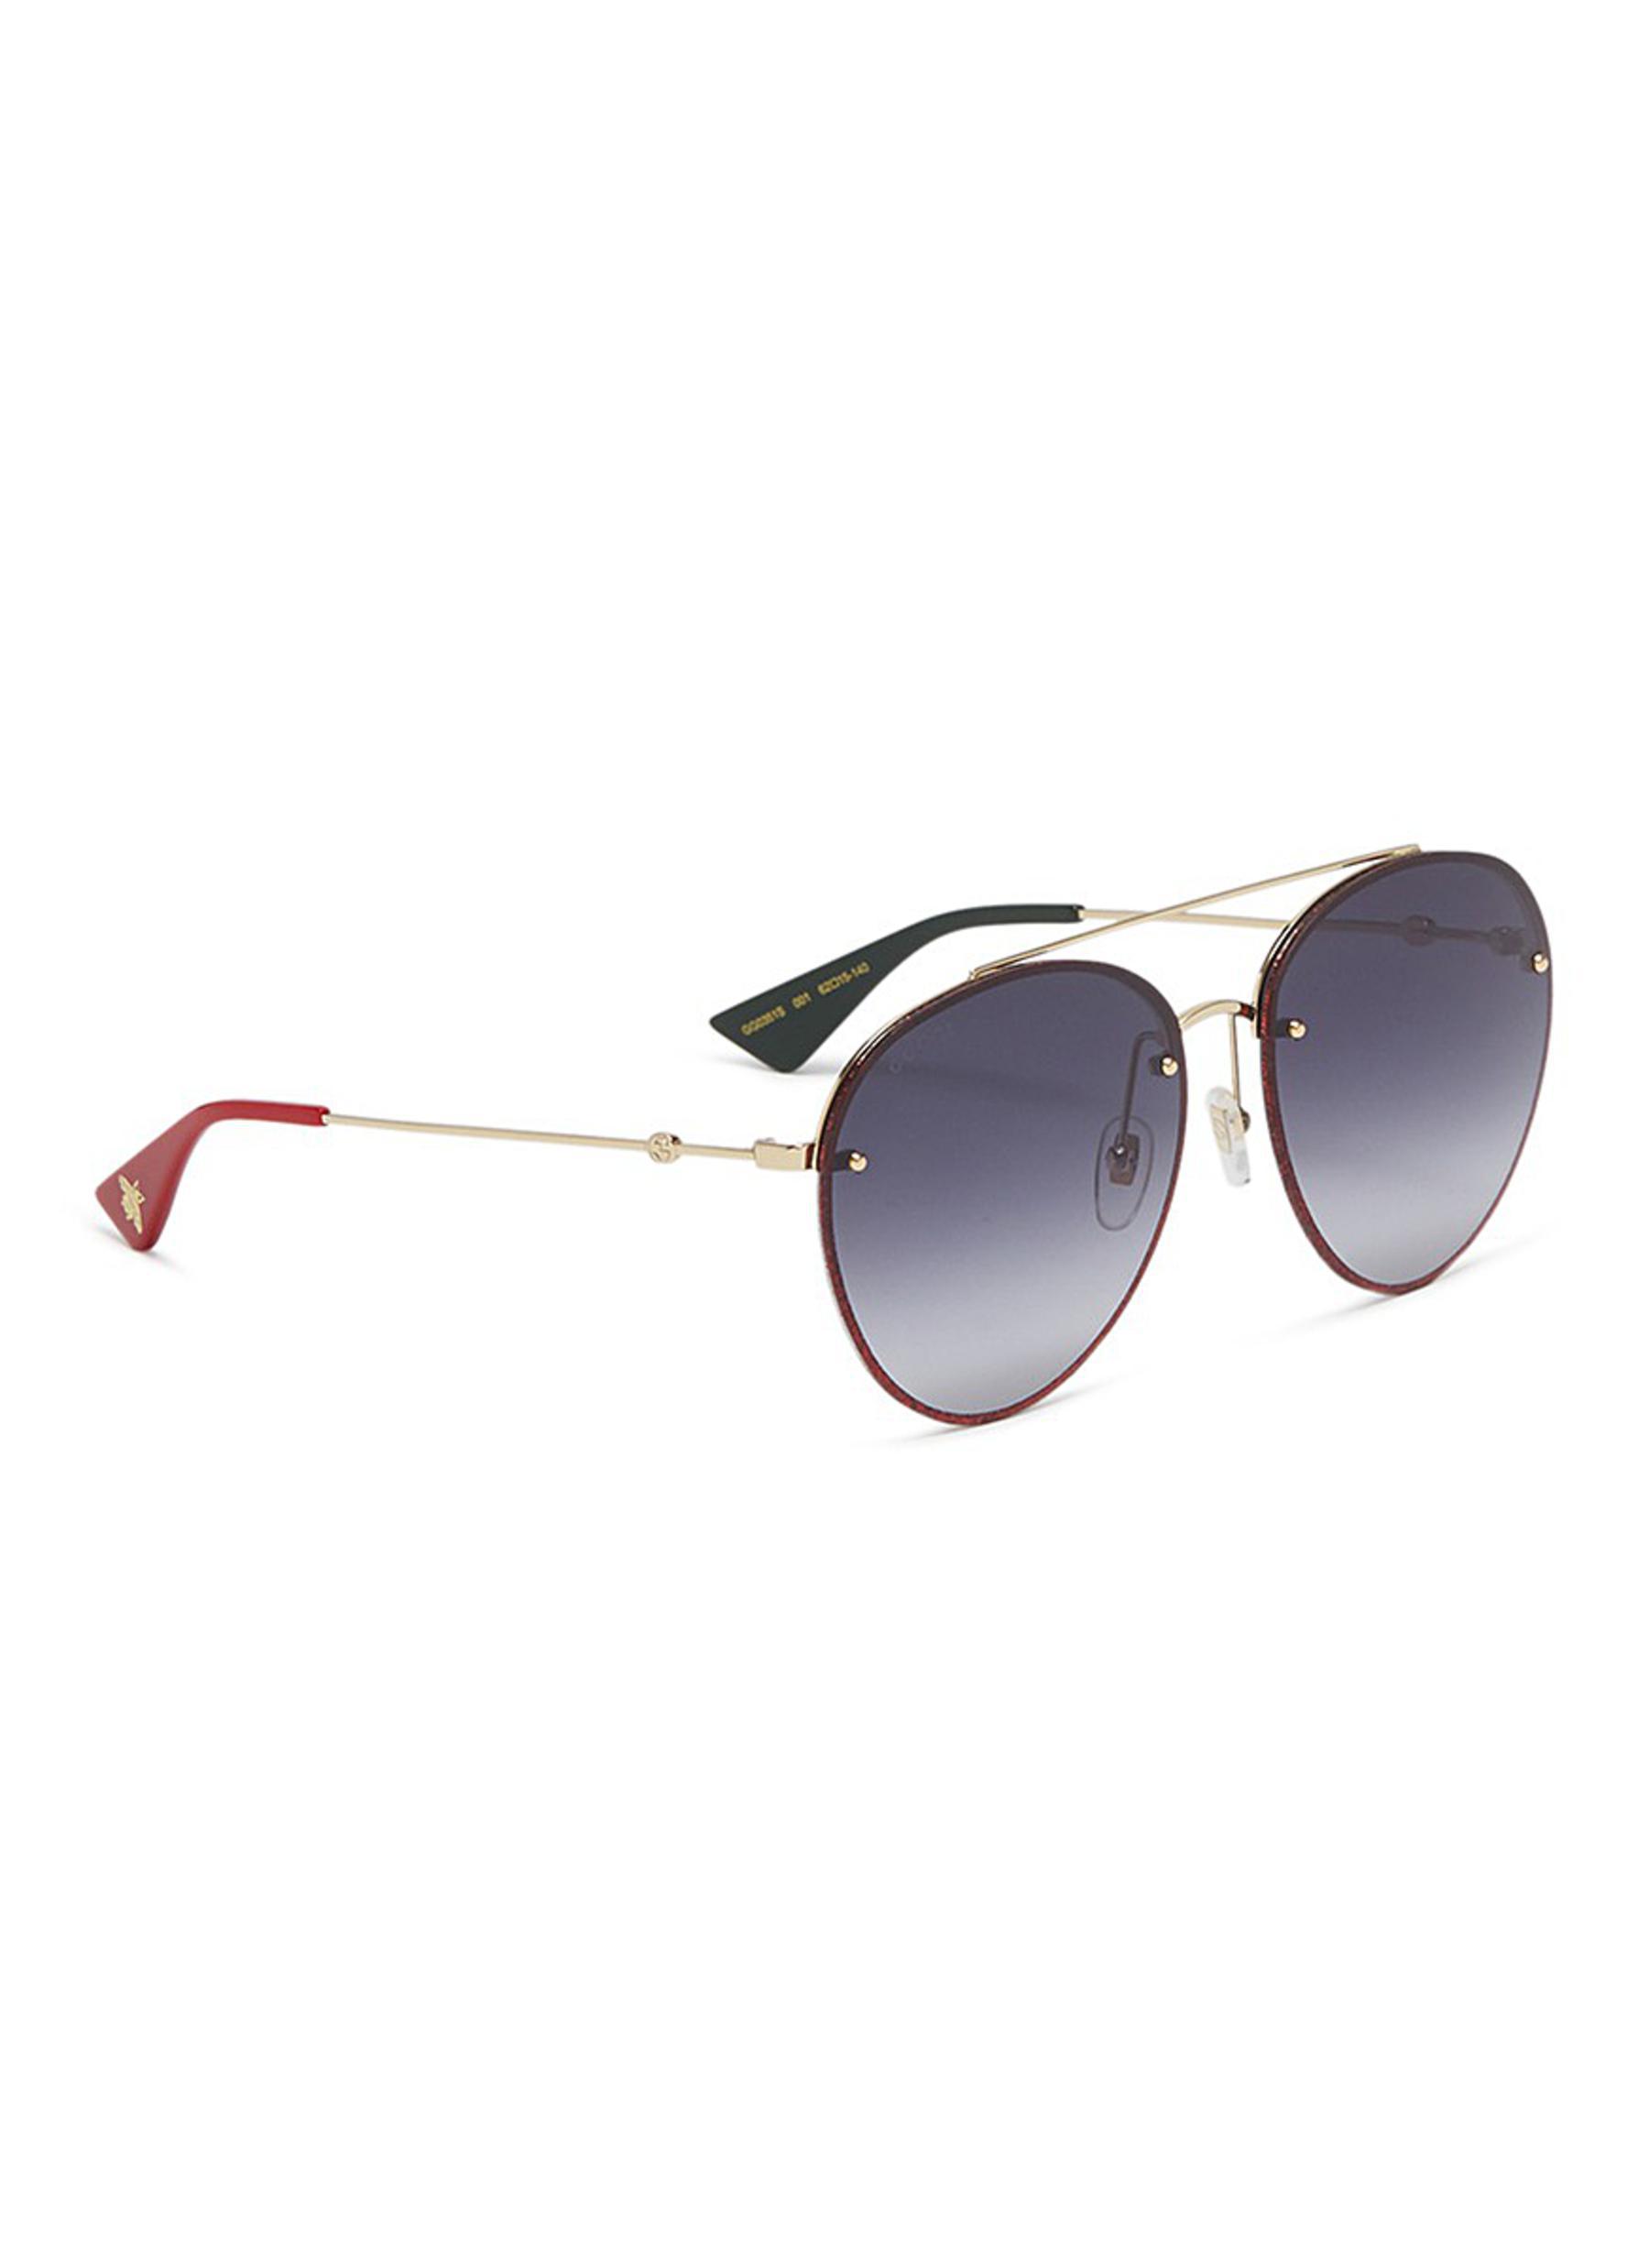 GUCCI GG0061S GG 0061S 007 Silver/Red glitter sunglasses 56-22-140 | eBay